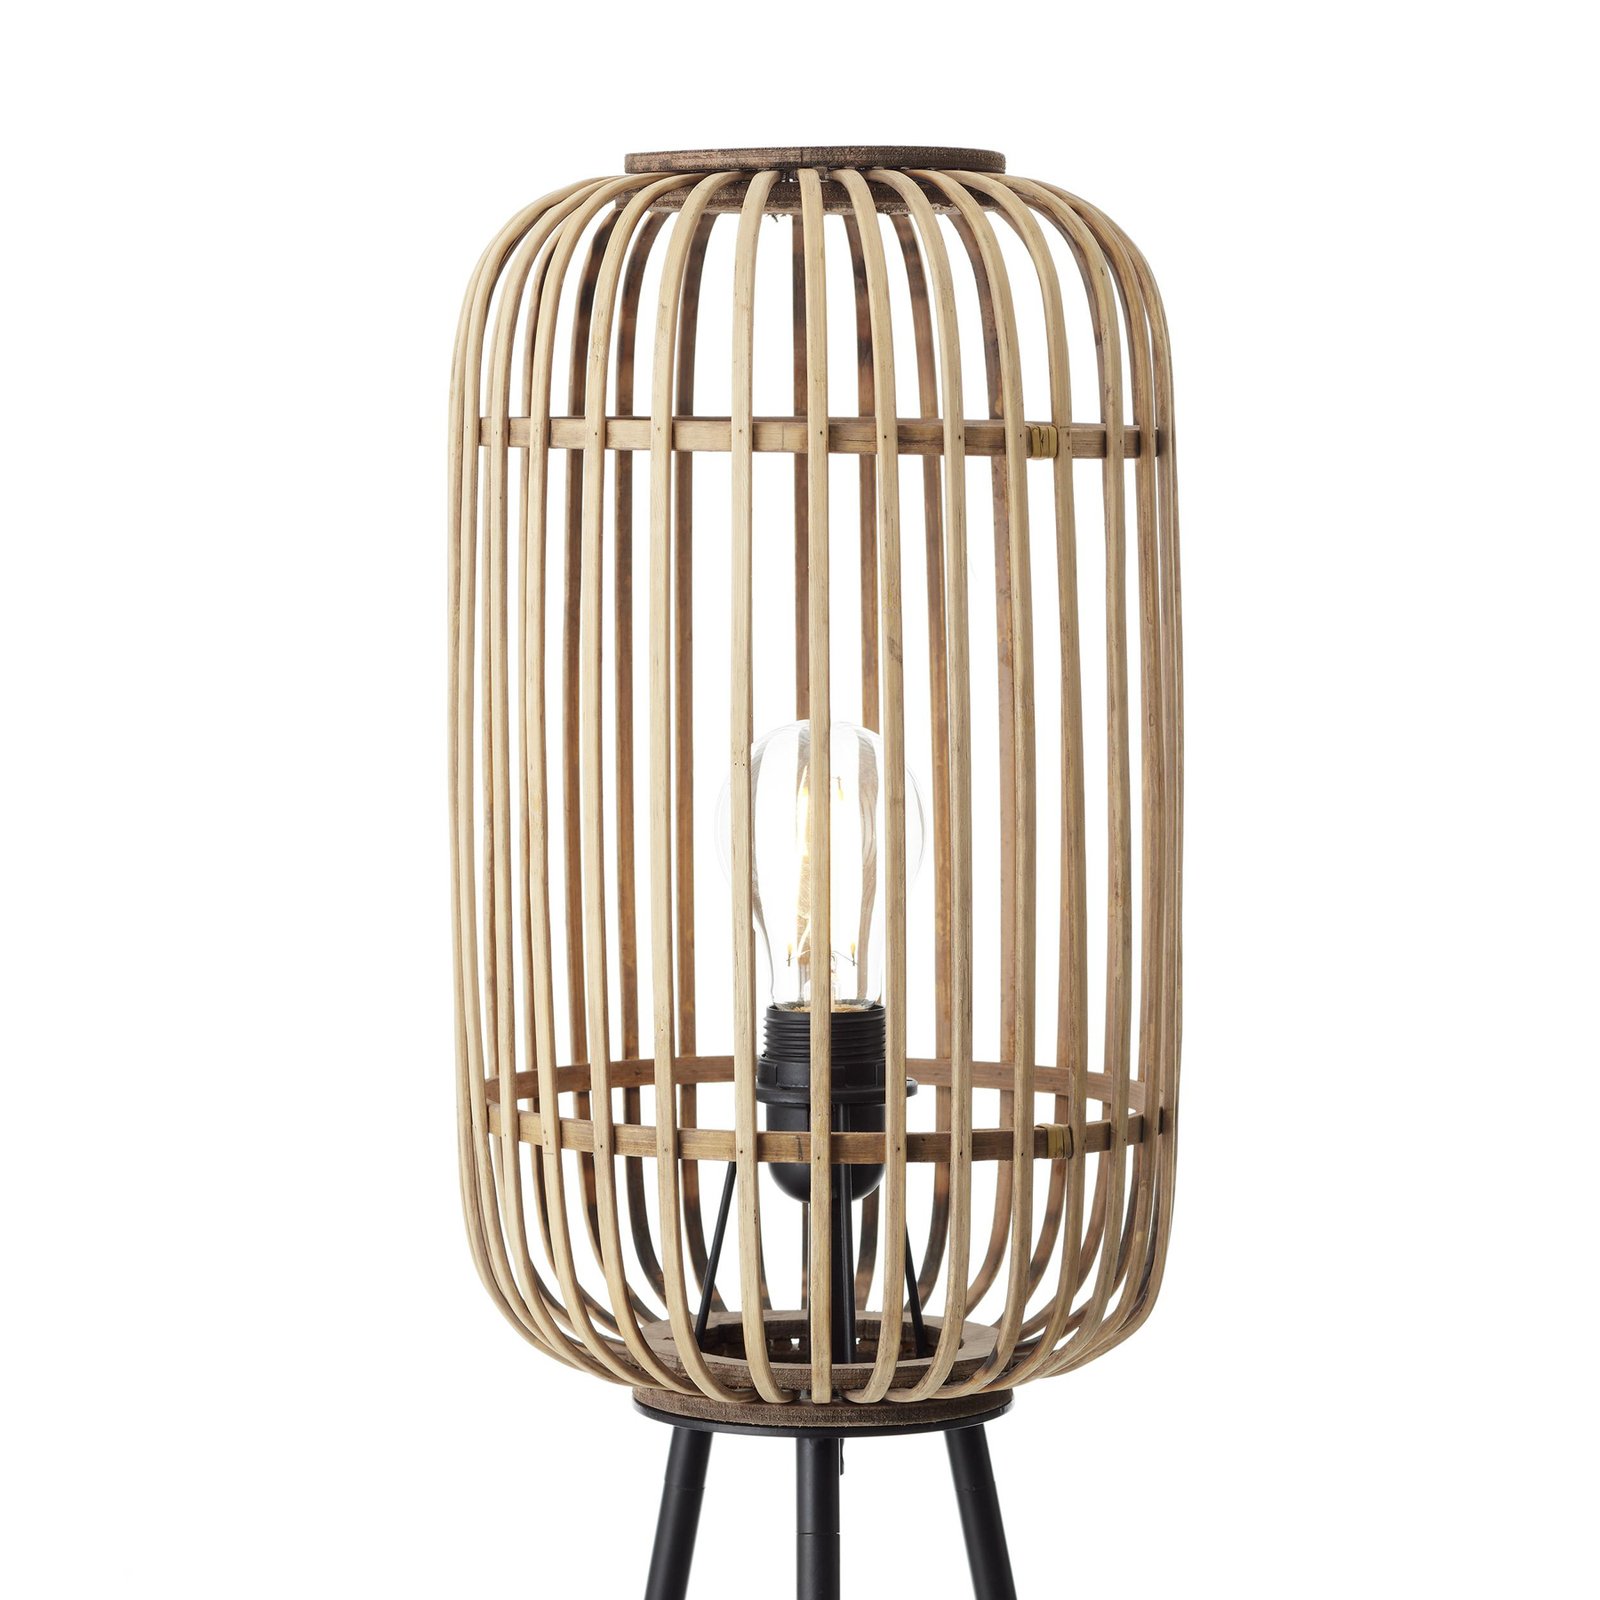 Woodrow lámpara de pie, altura 130 cm, madera clara, bambú/metal